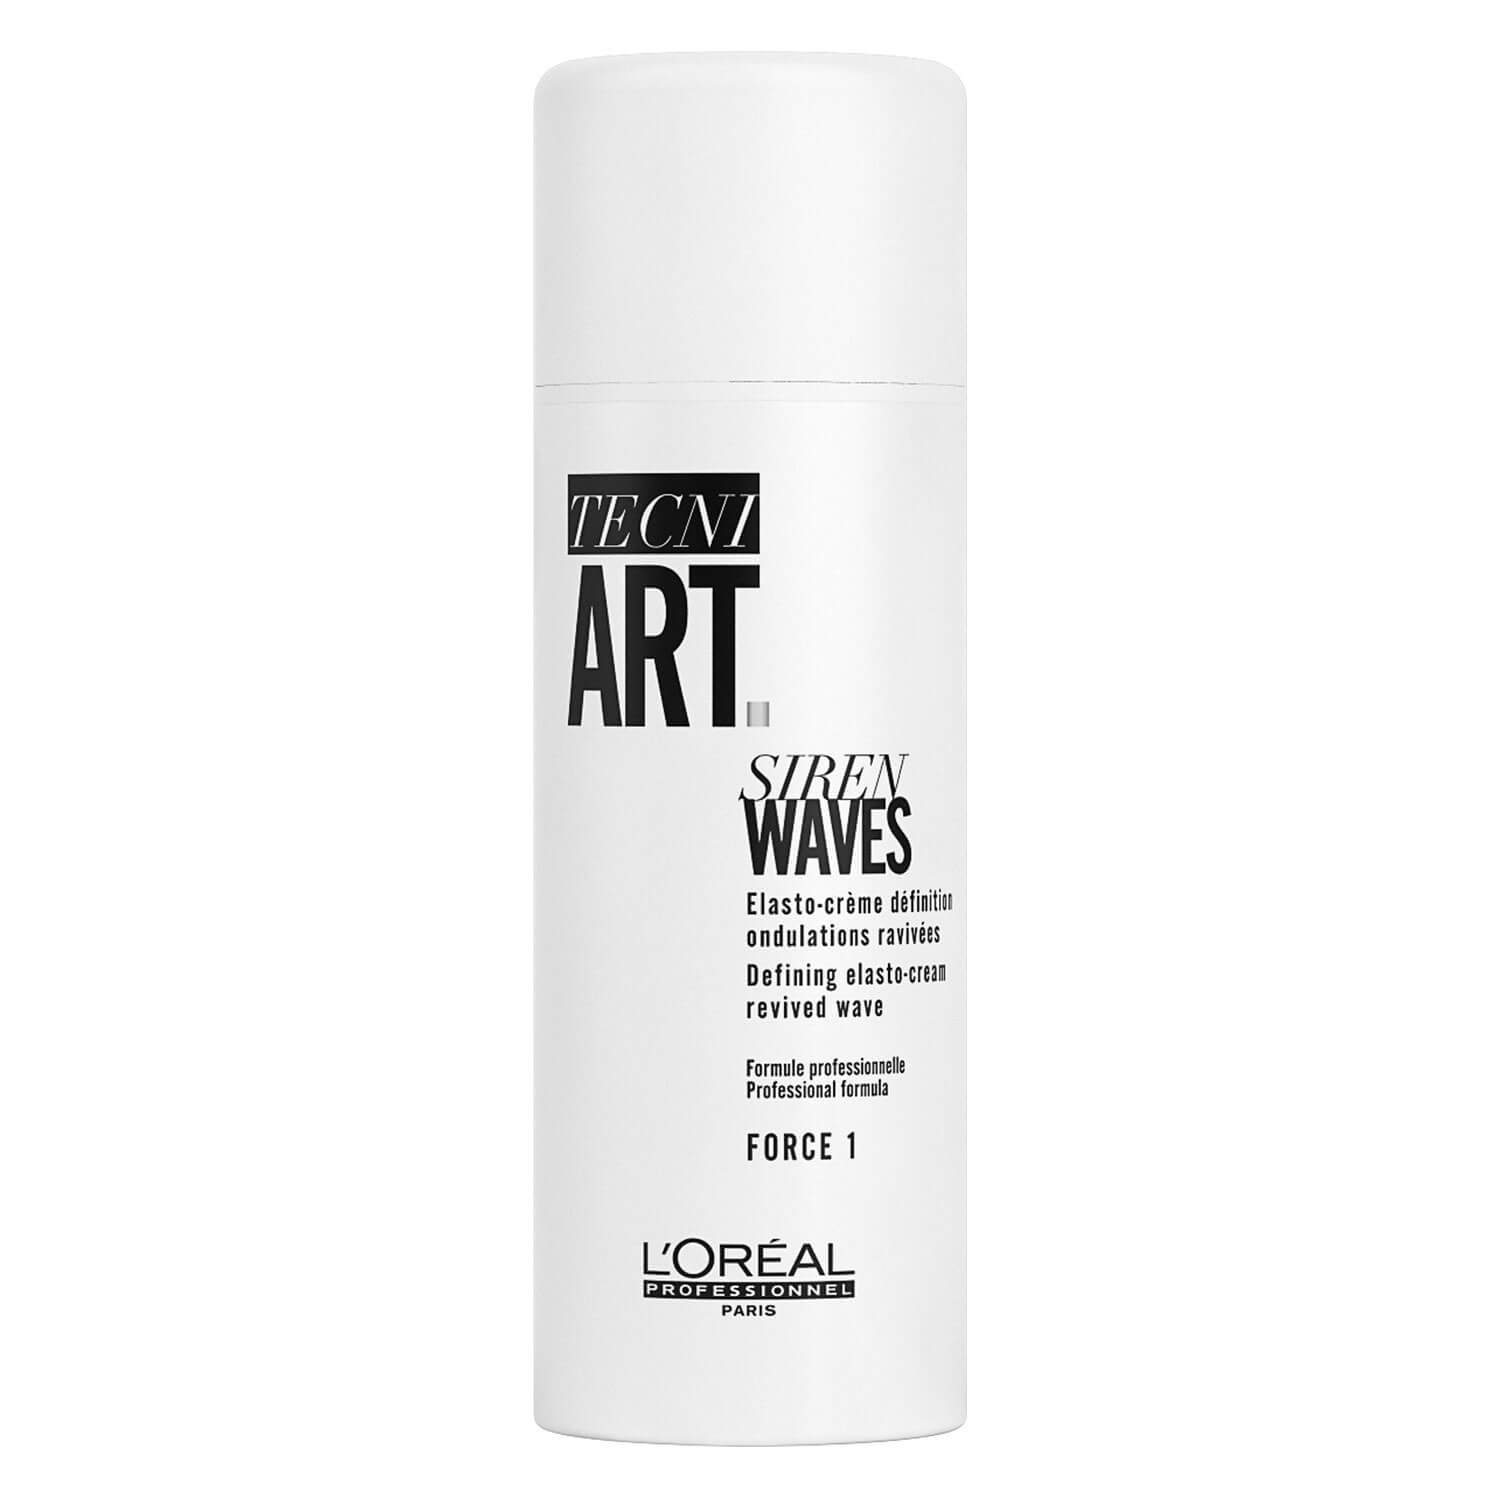 Produktbild von Tecni.art Essentials - Siren Waves